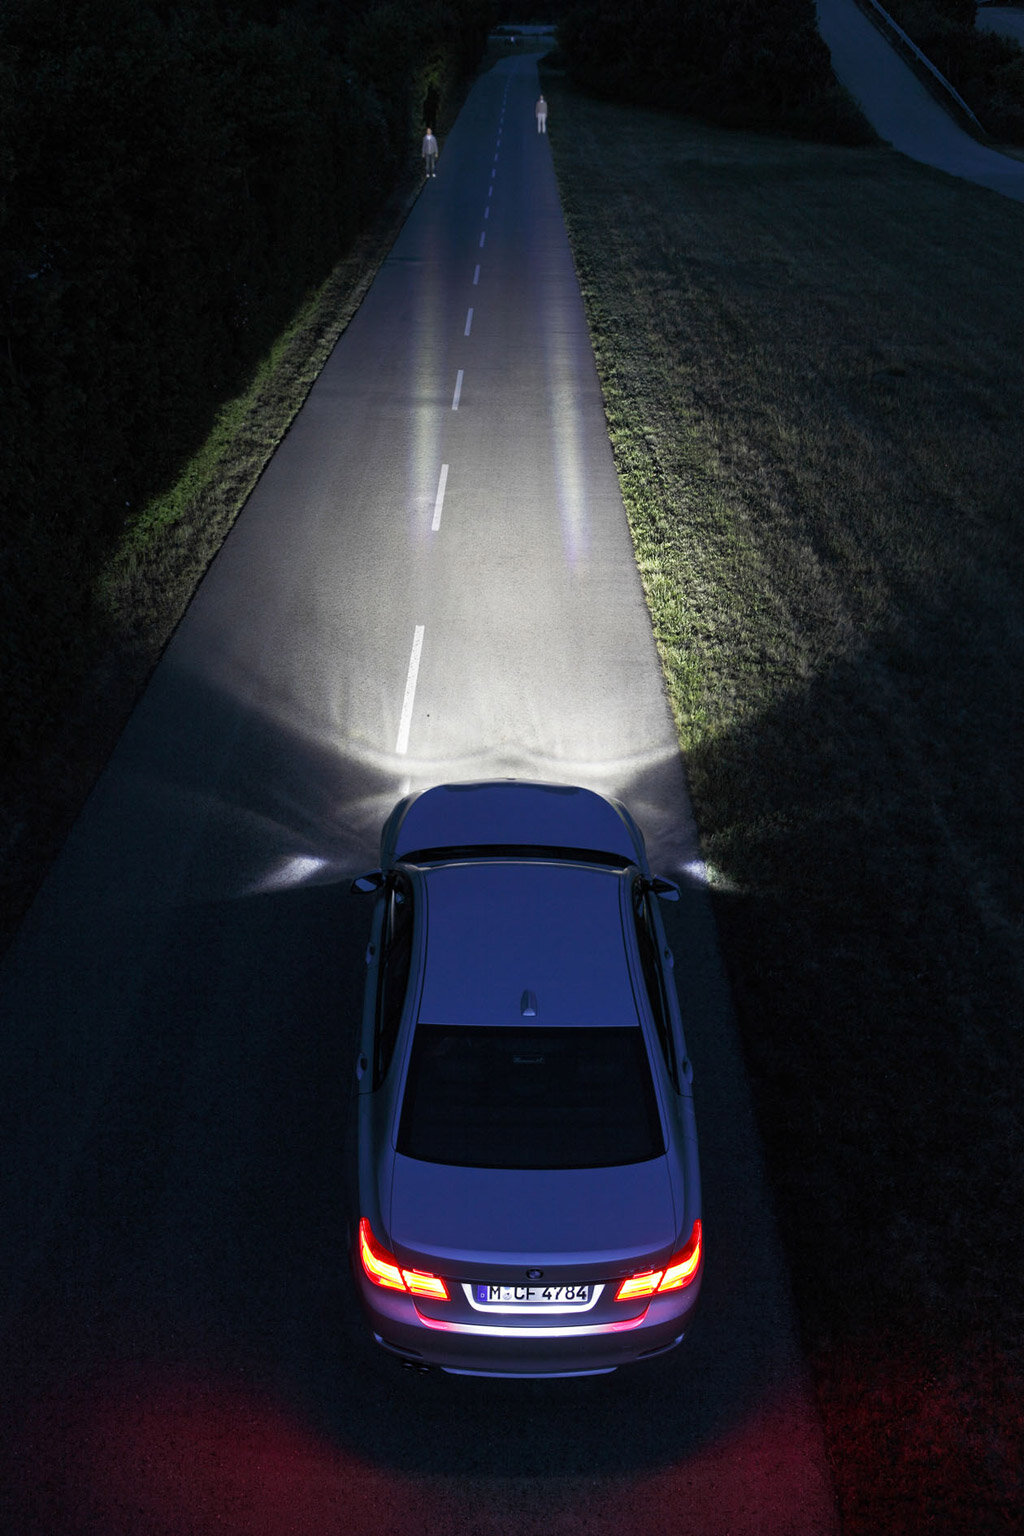 Light avto. Лазерно-люминофорные фары. BMW Laser фары. Лазерные фары Осрам. Автомобиль ночью.